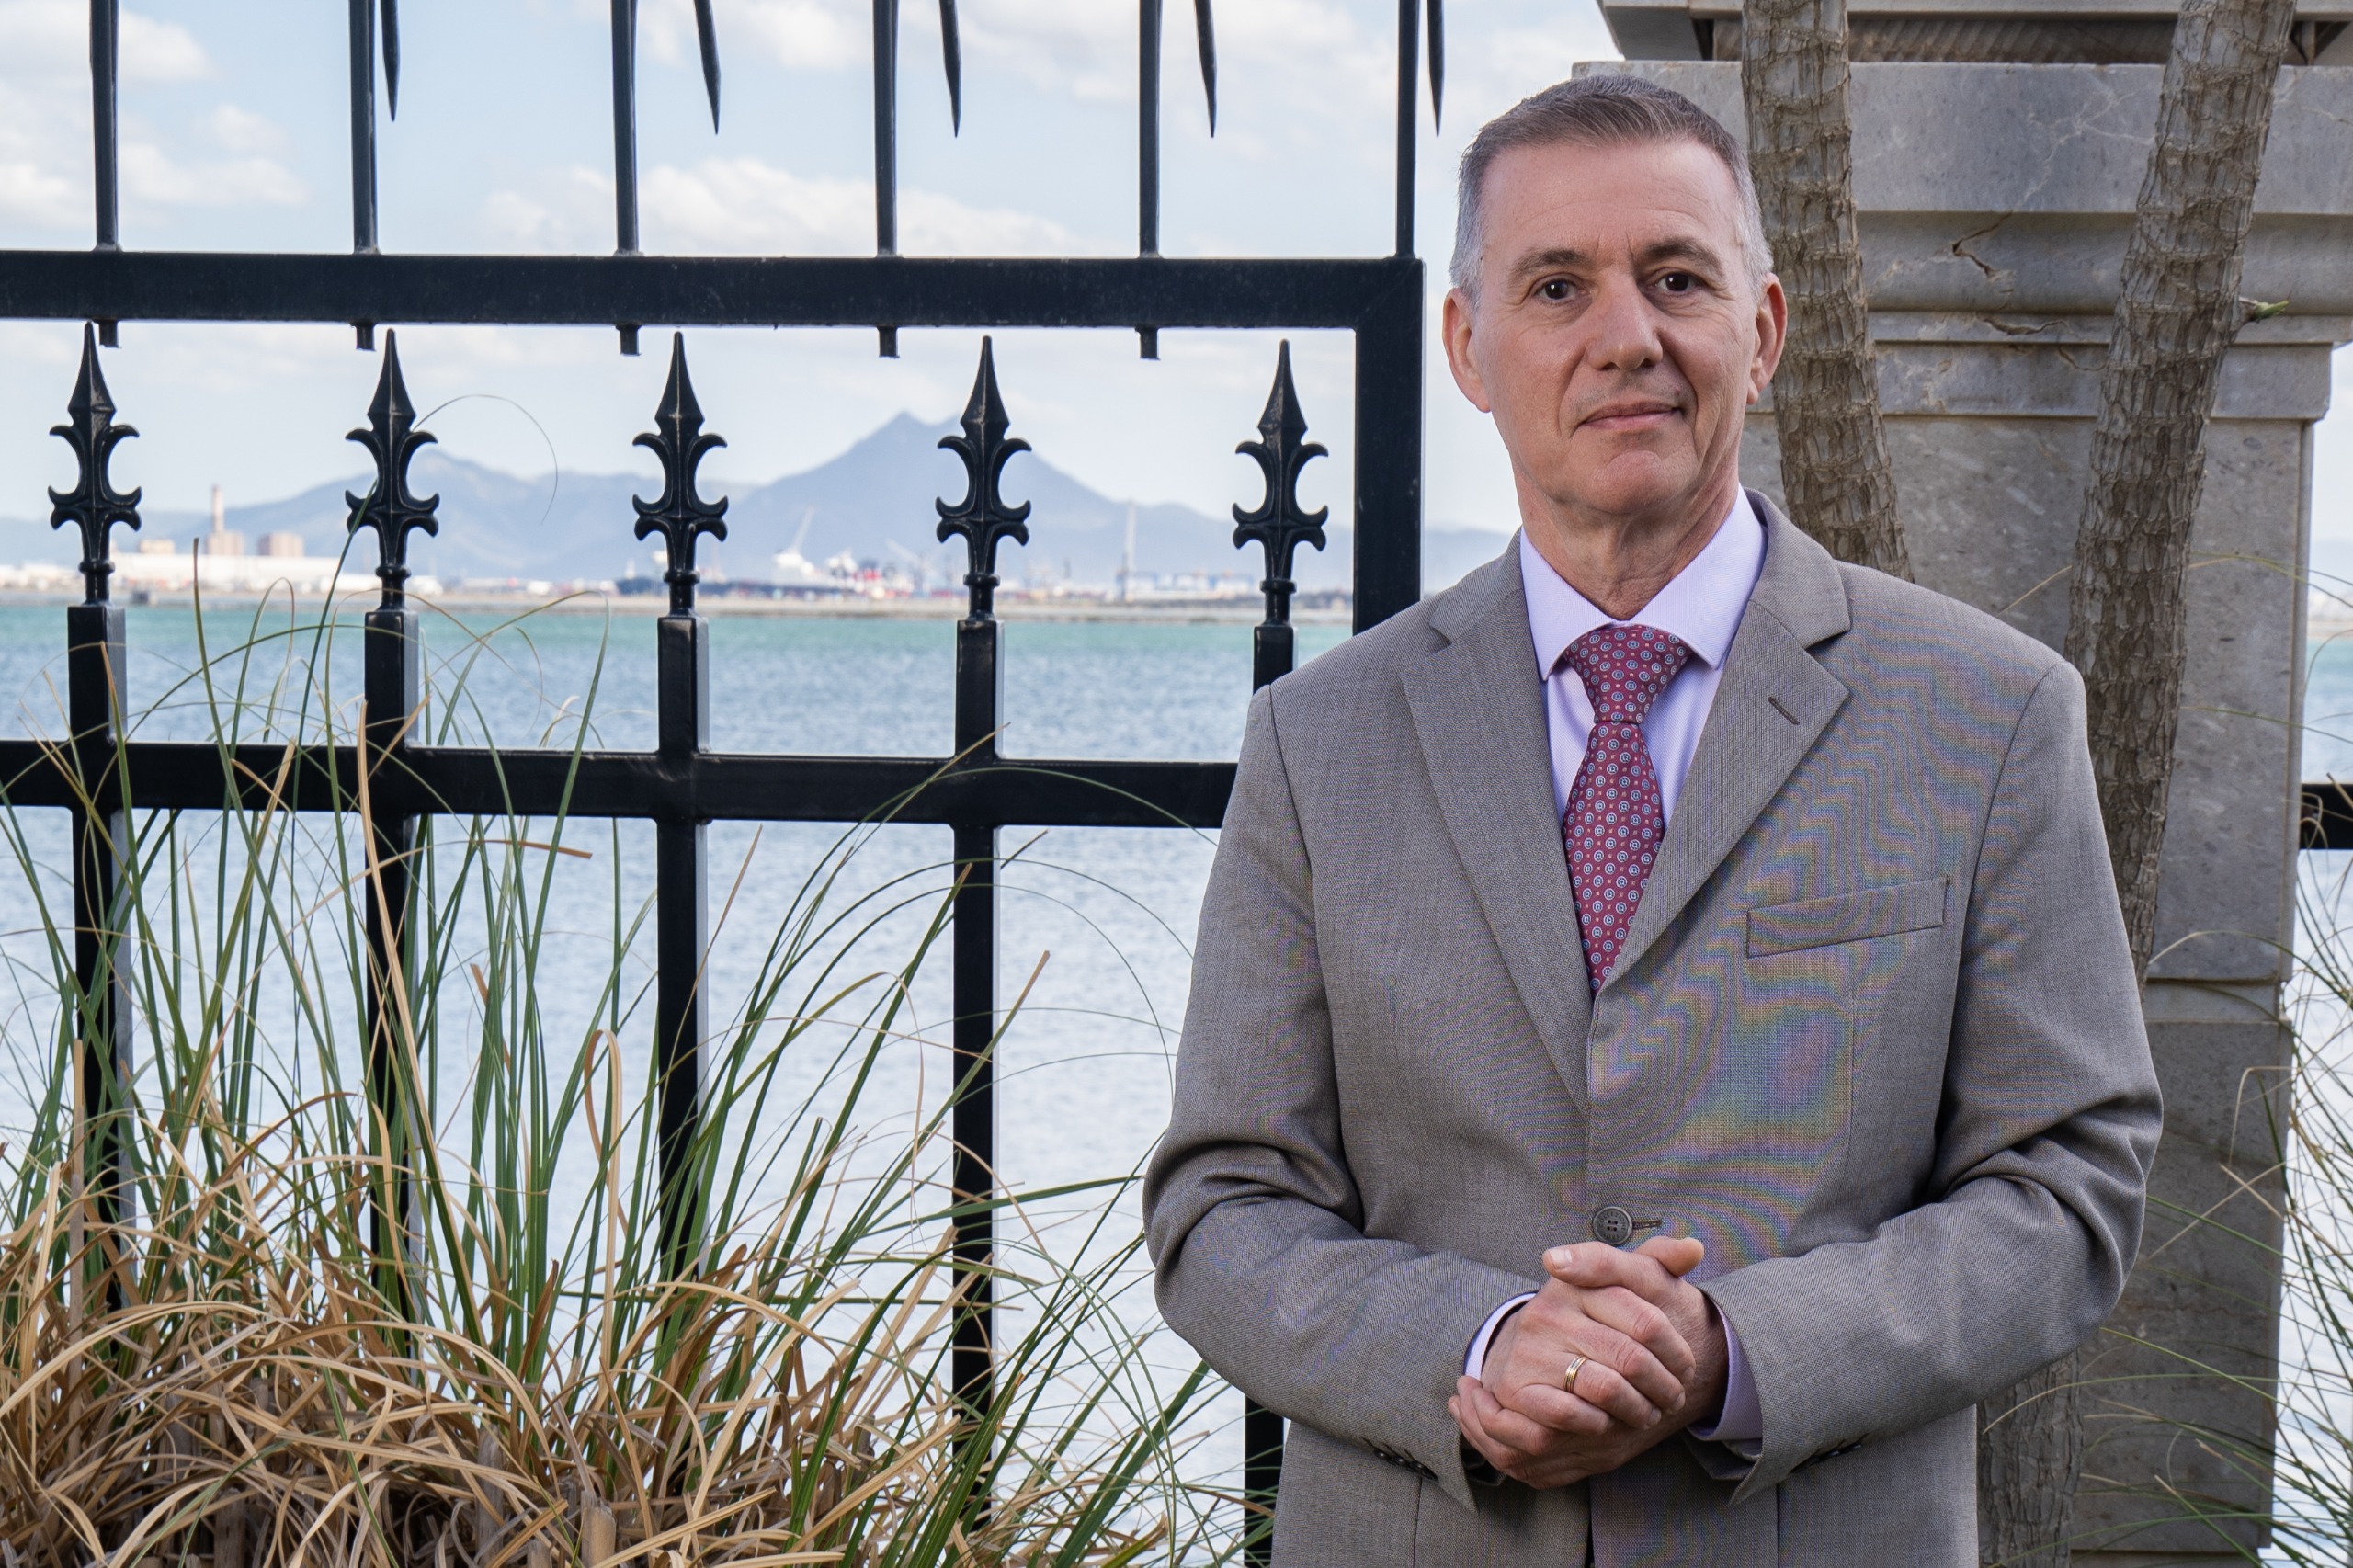 Mövenpick Hotel du Lac Tunis annonce l’arrivée d’Eric Vittenet en tant que nouveau Directeur Général.